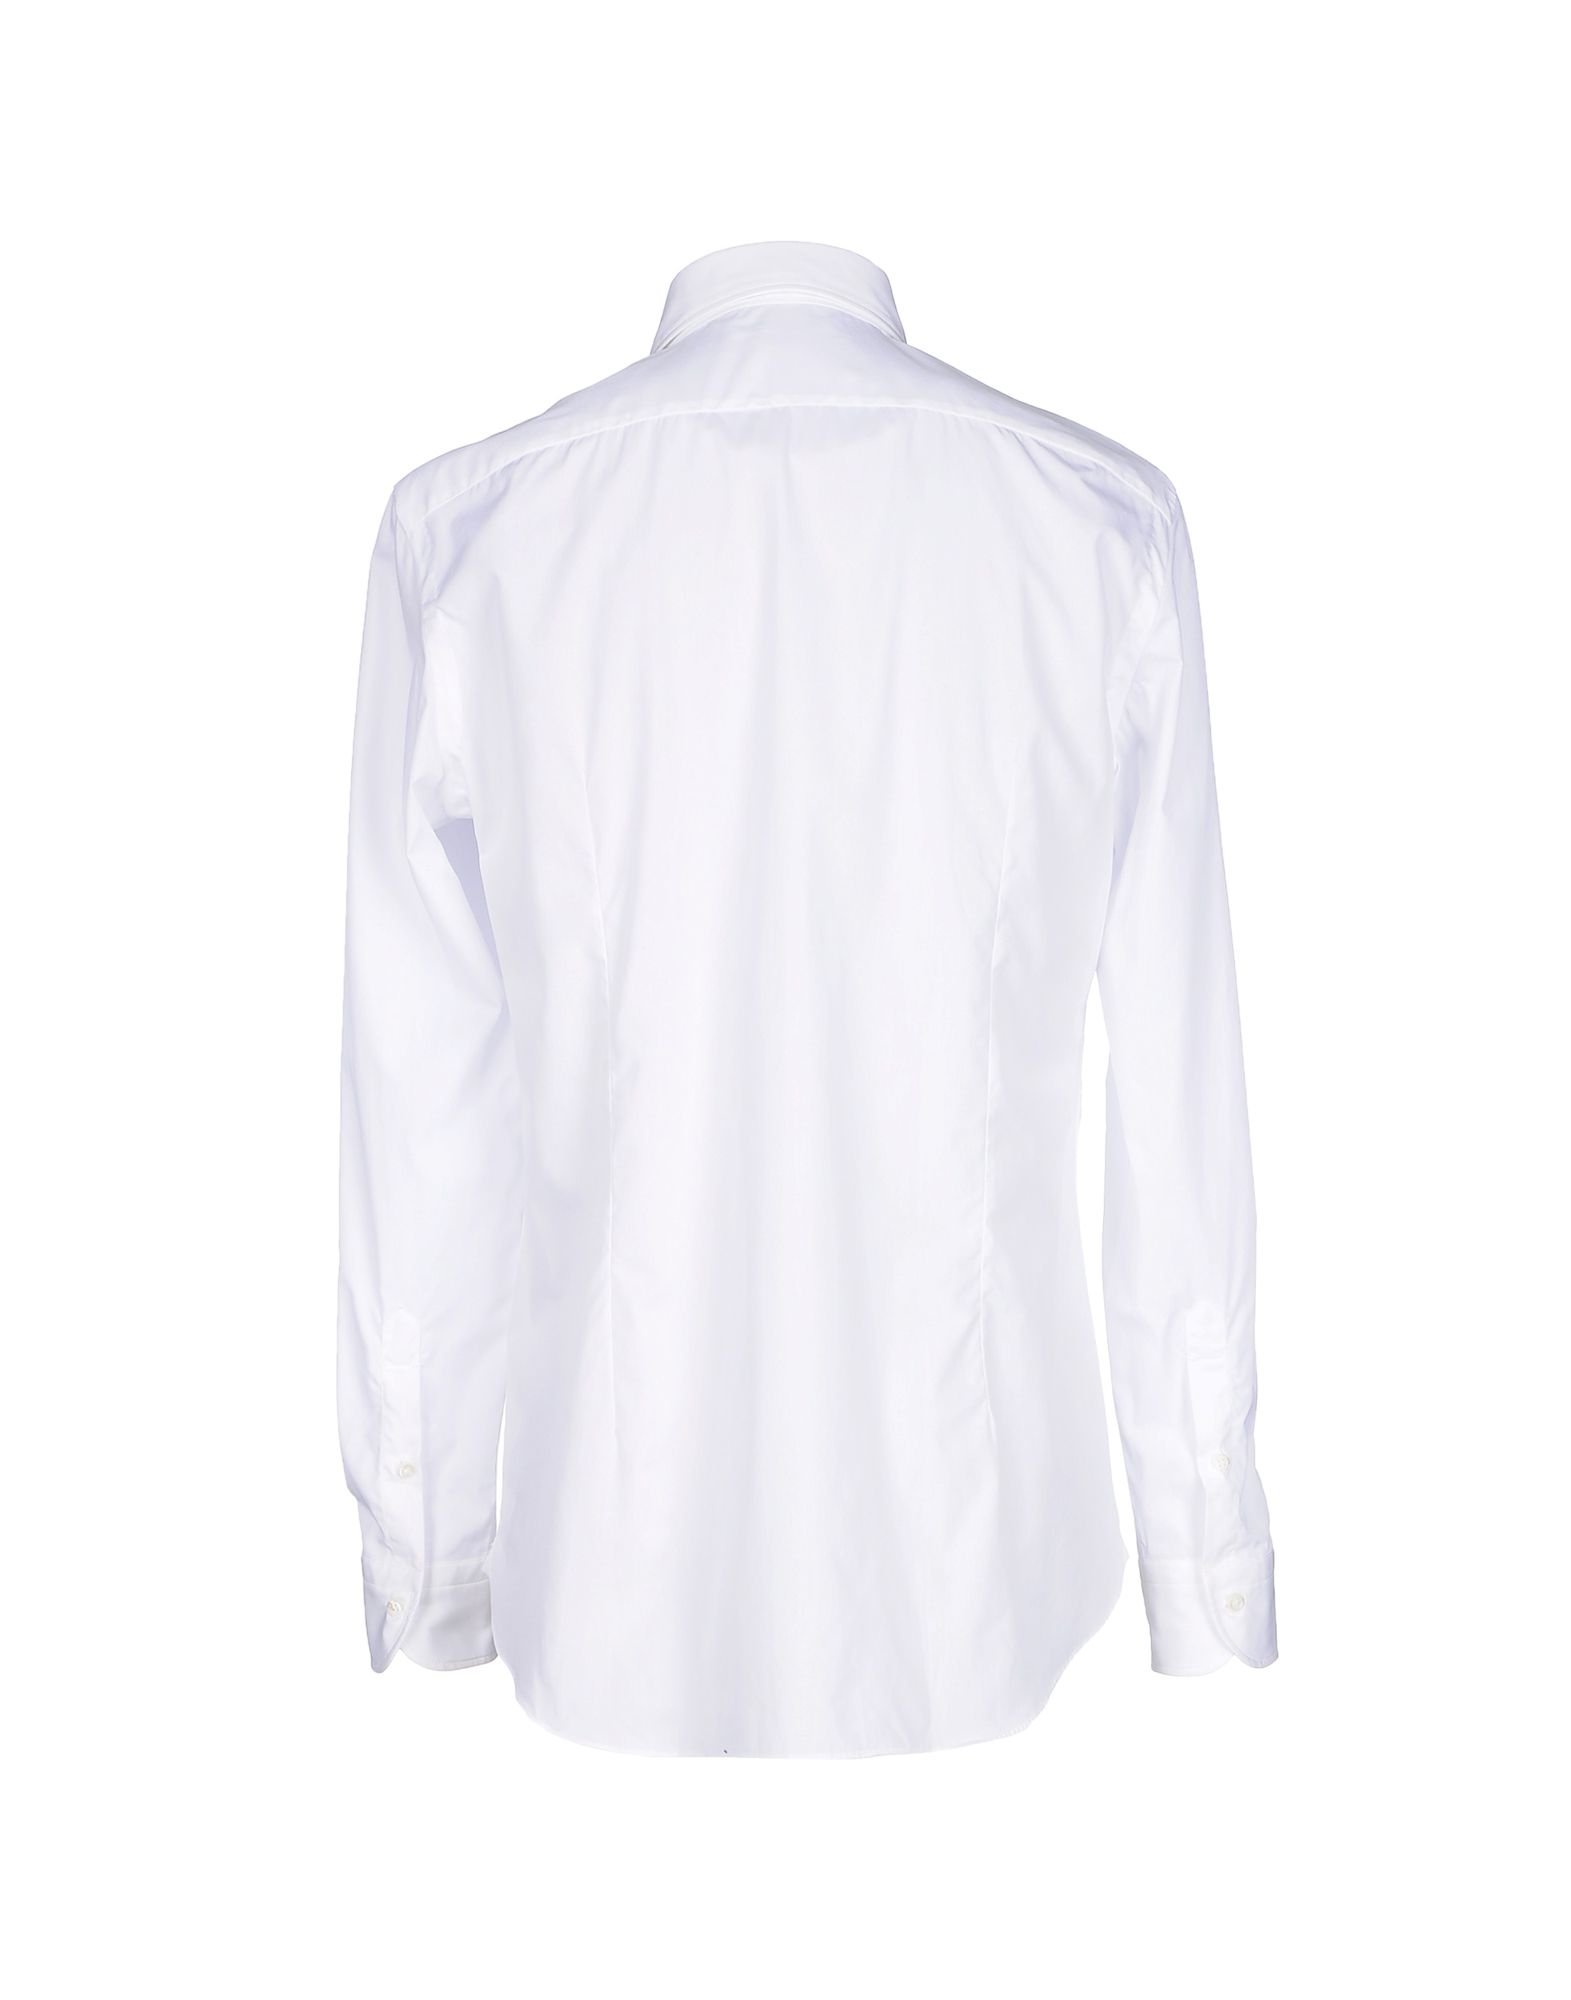 Lyst - Vincenzo di ruggiero Shirt in White for Men